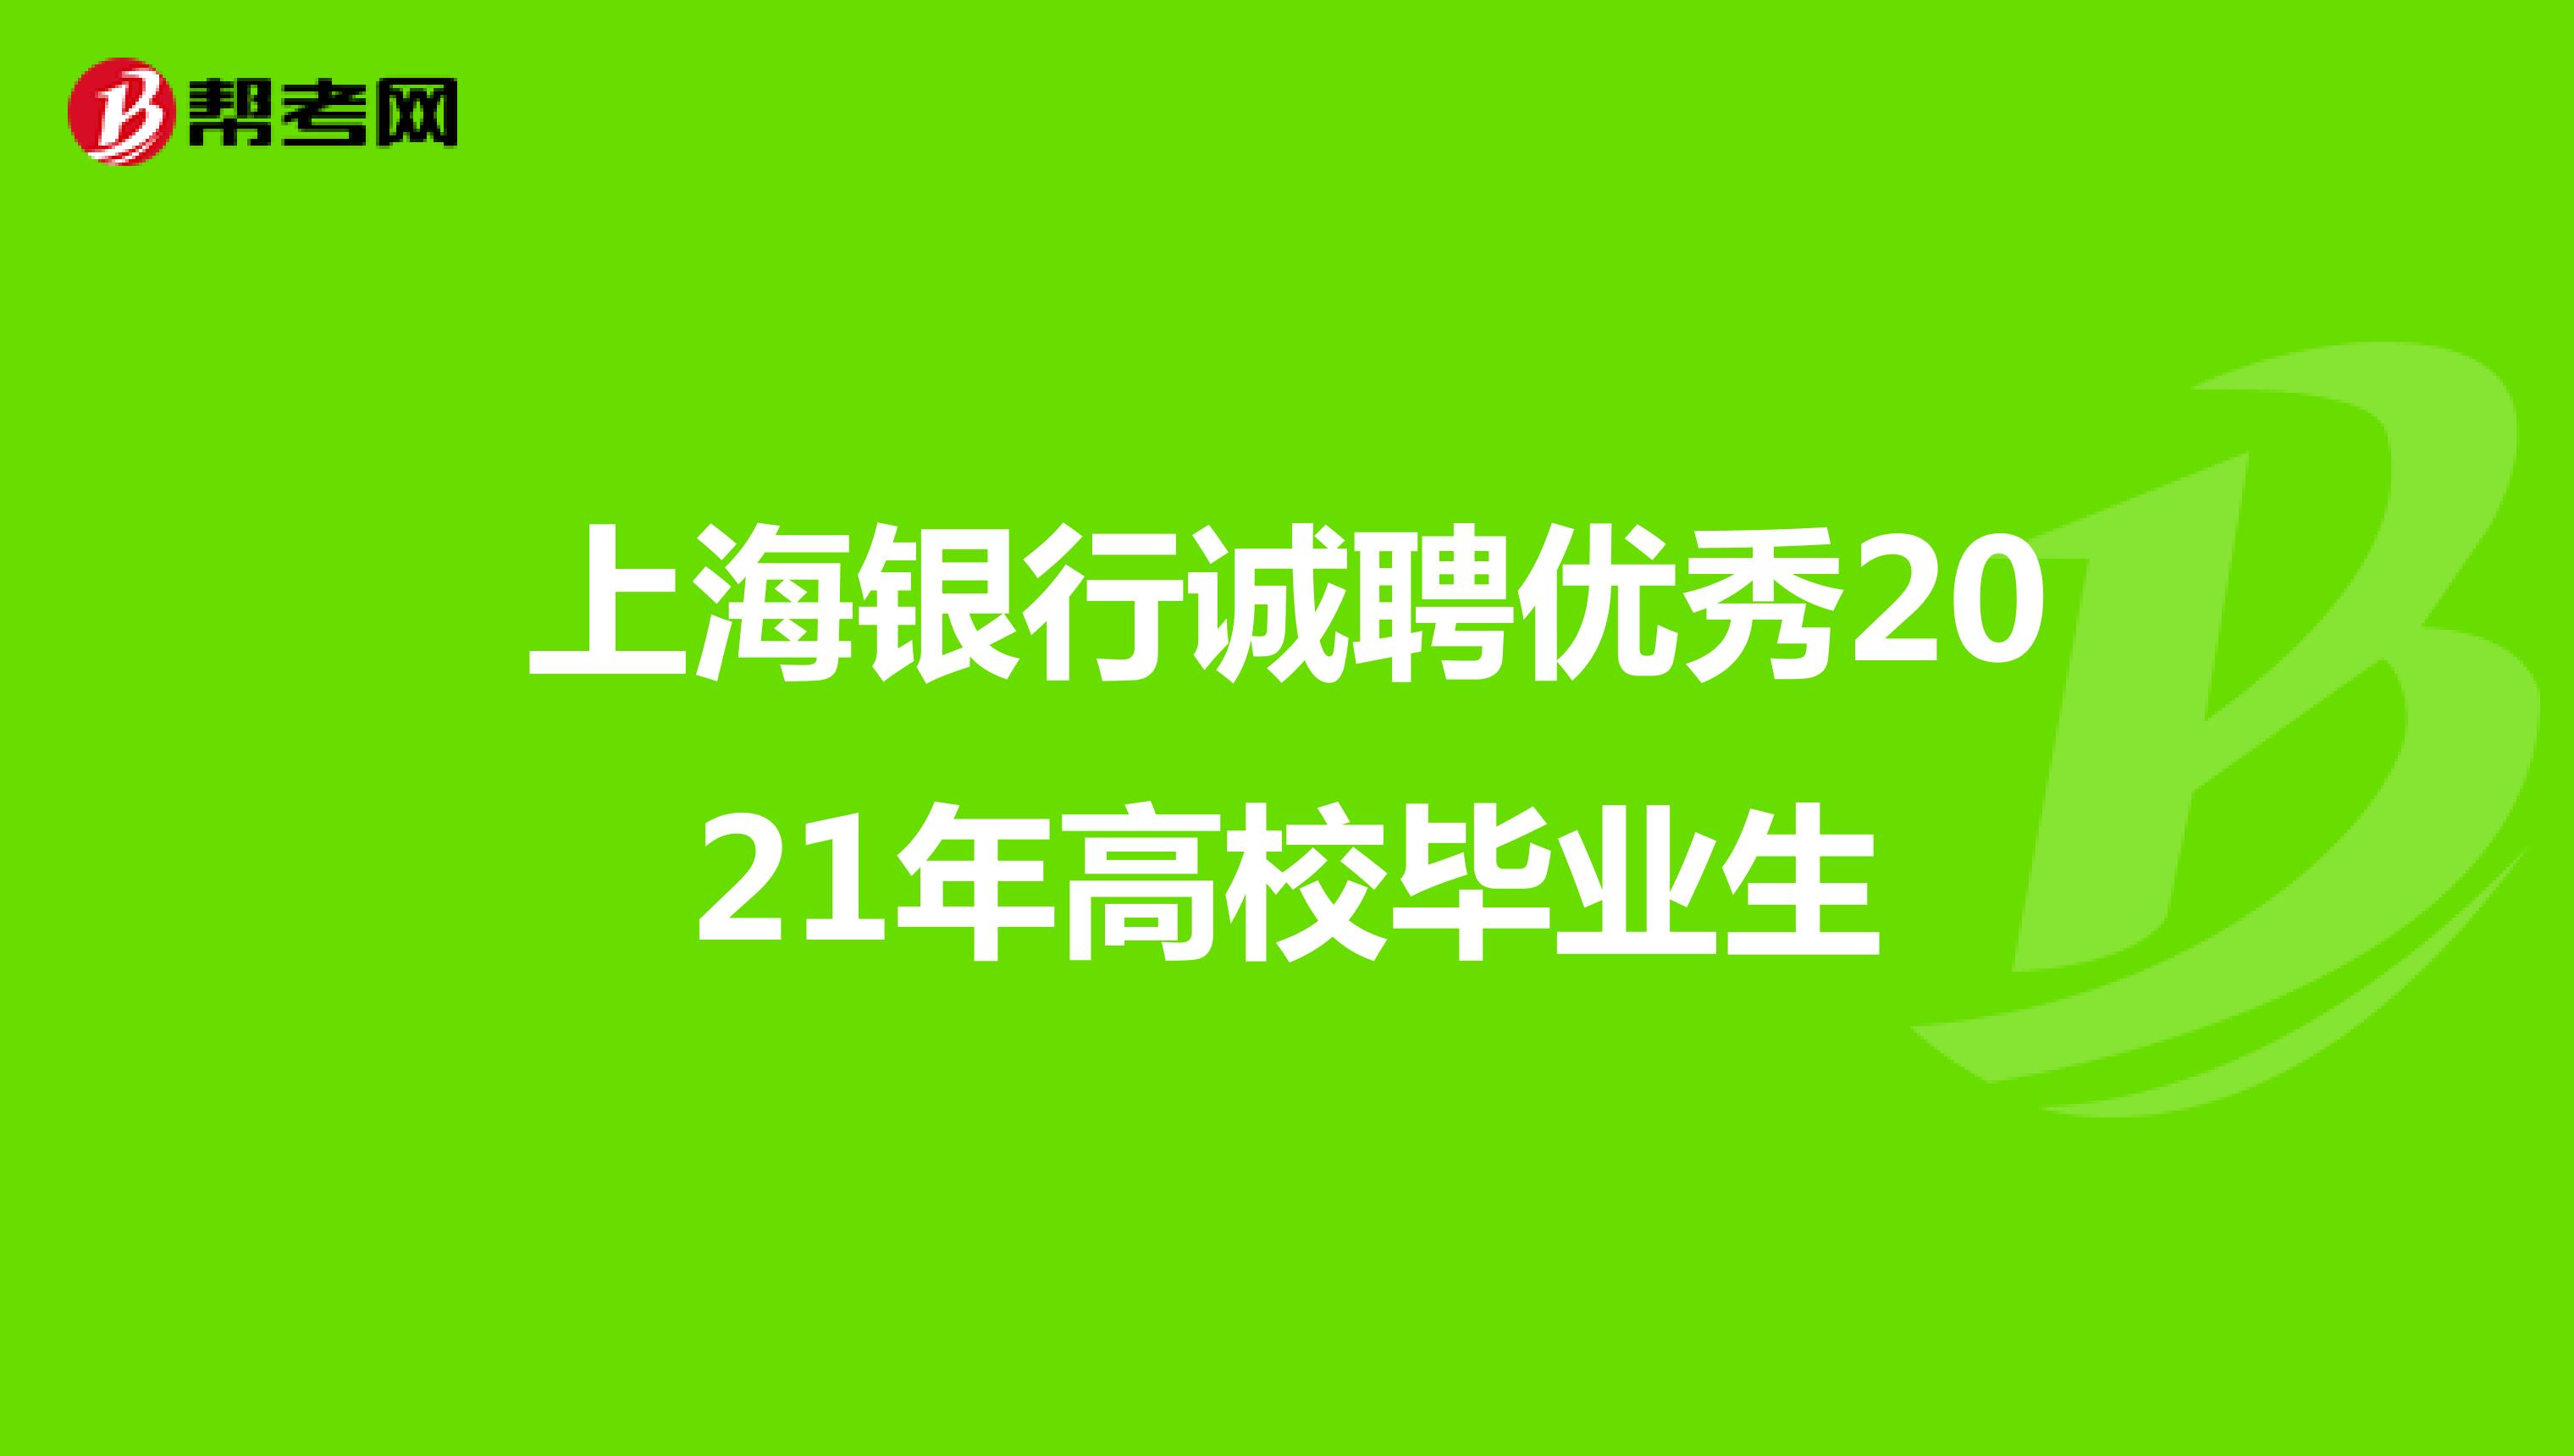 上海银行诚聘优秀2021年高校毕业生